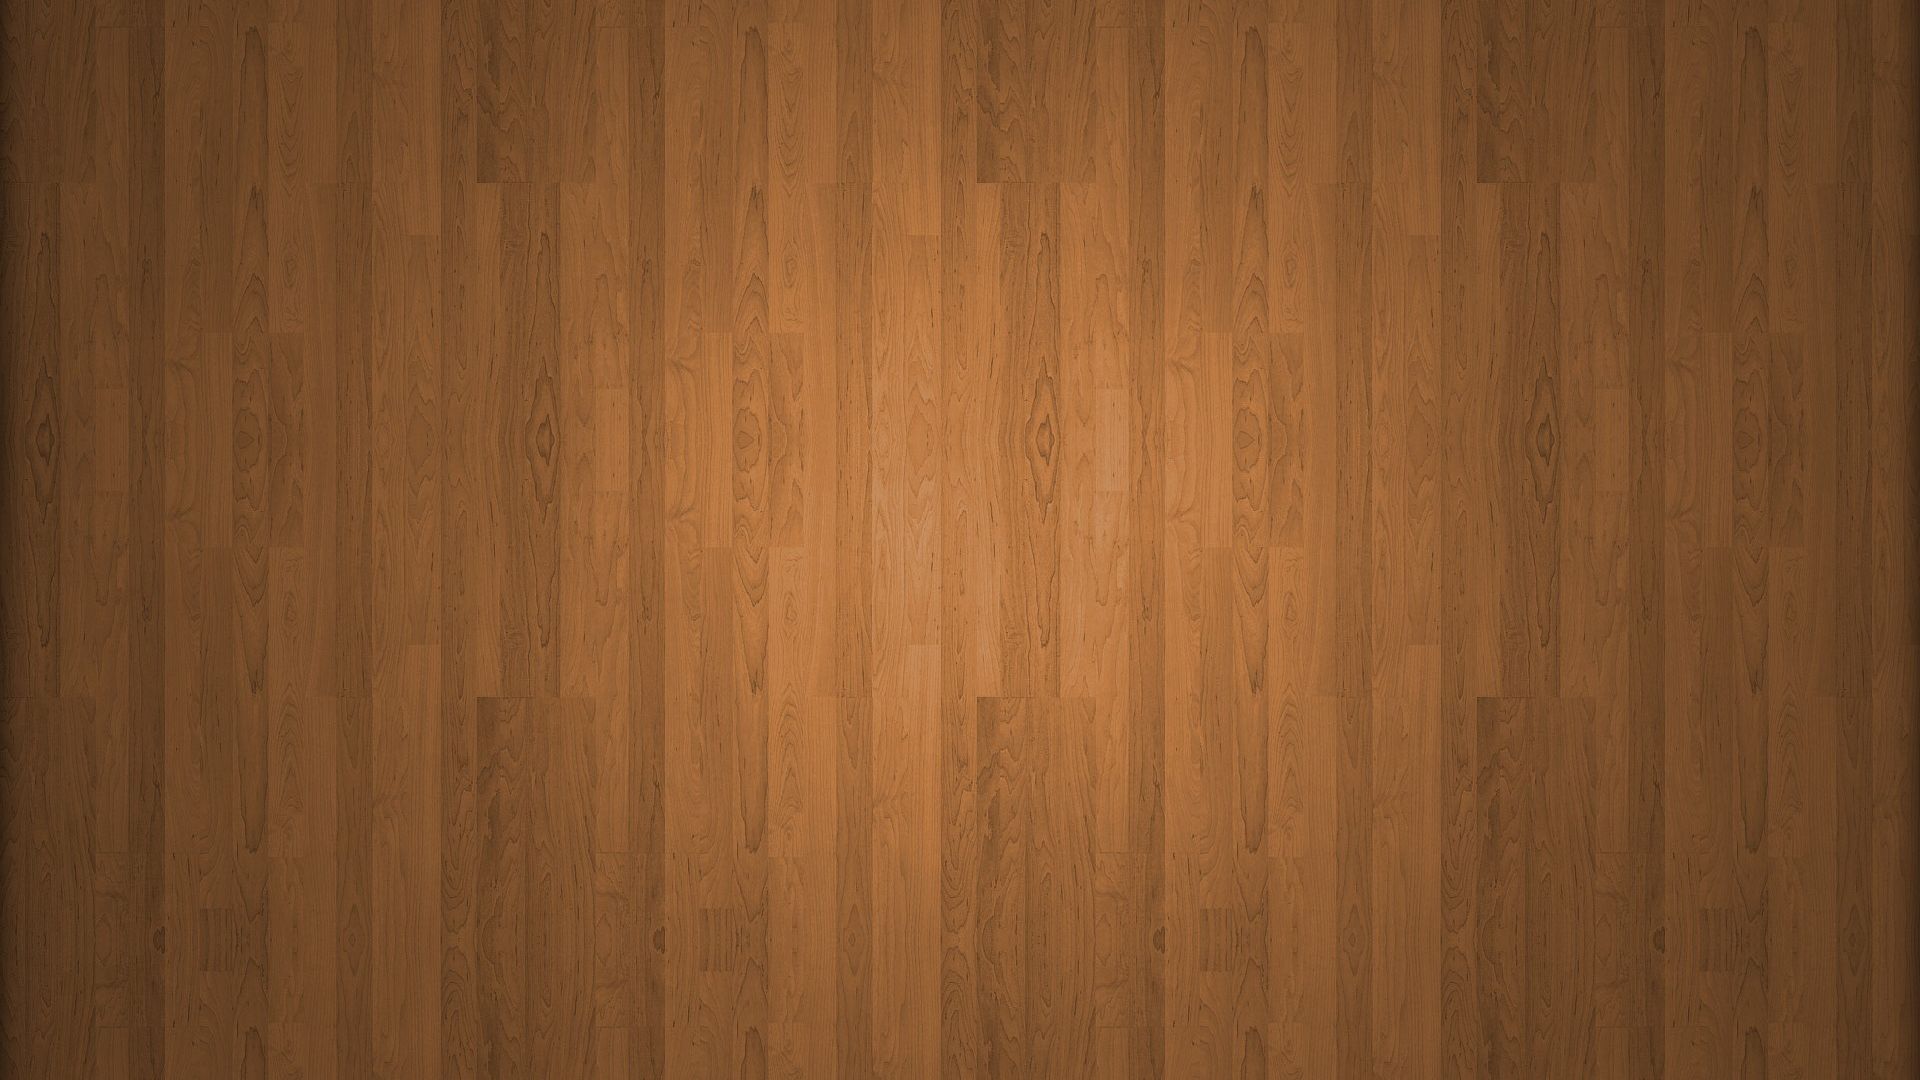 Sàn gỗ là sự lựa chọn lý tưởng để tạo ra một không gian sống ấm cúng và sang trọng. Hãy cùng khám phá những mẫu sàn gỗ đẹp và chất lượng để biến ngôi nhà của bạn thành một nơi đẹp như mơ.